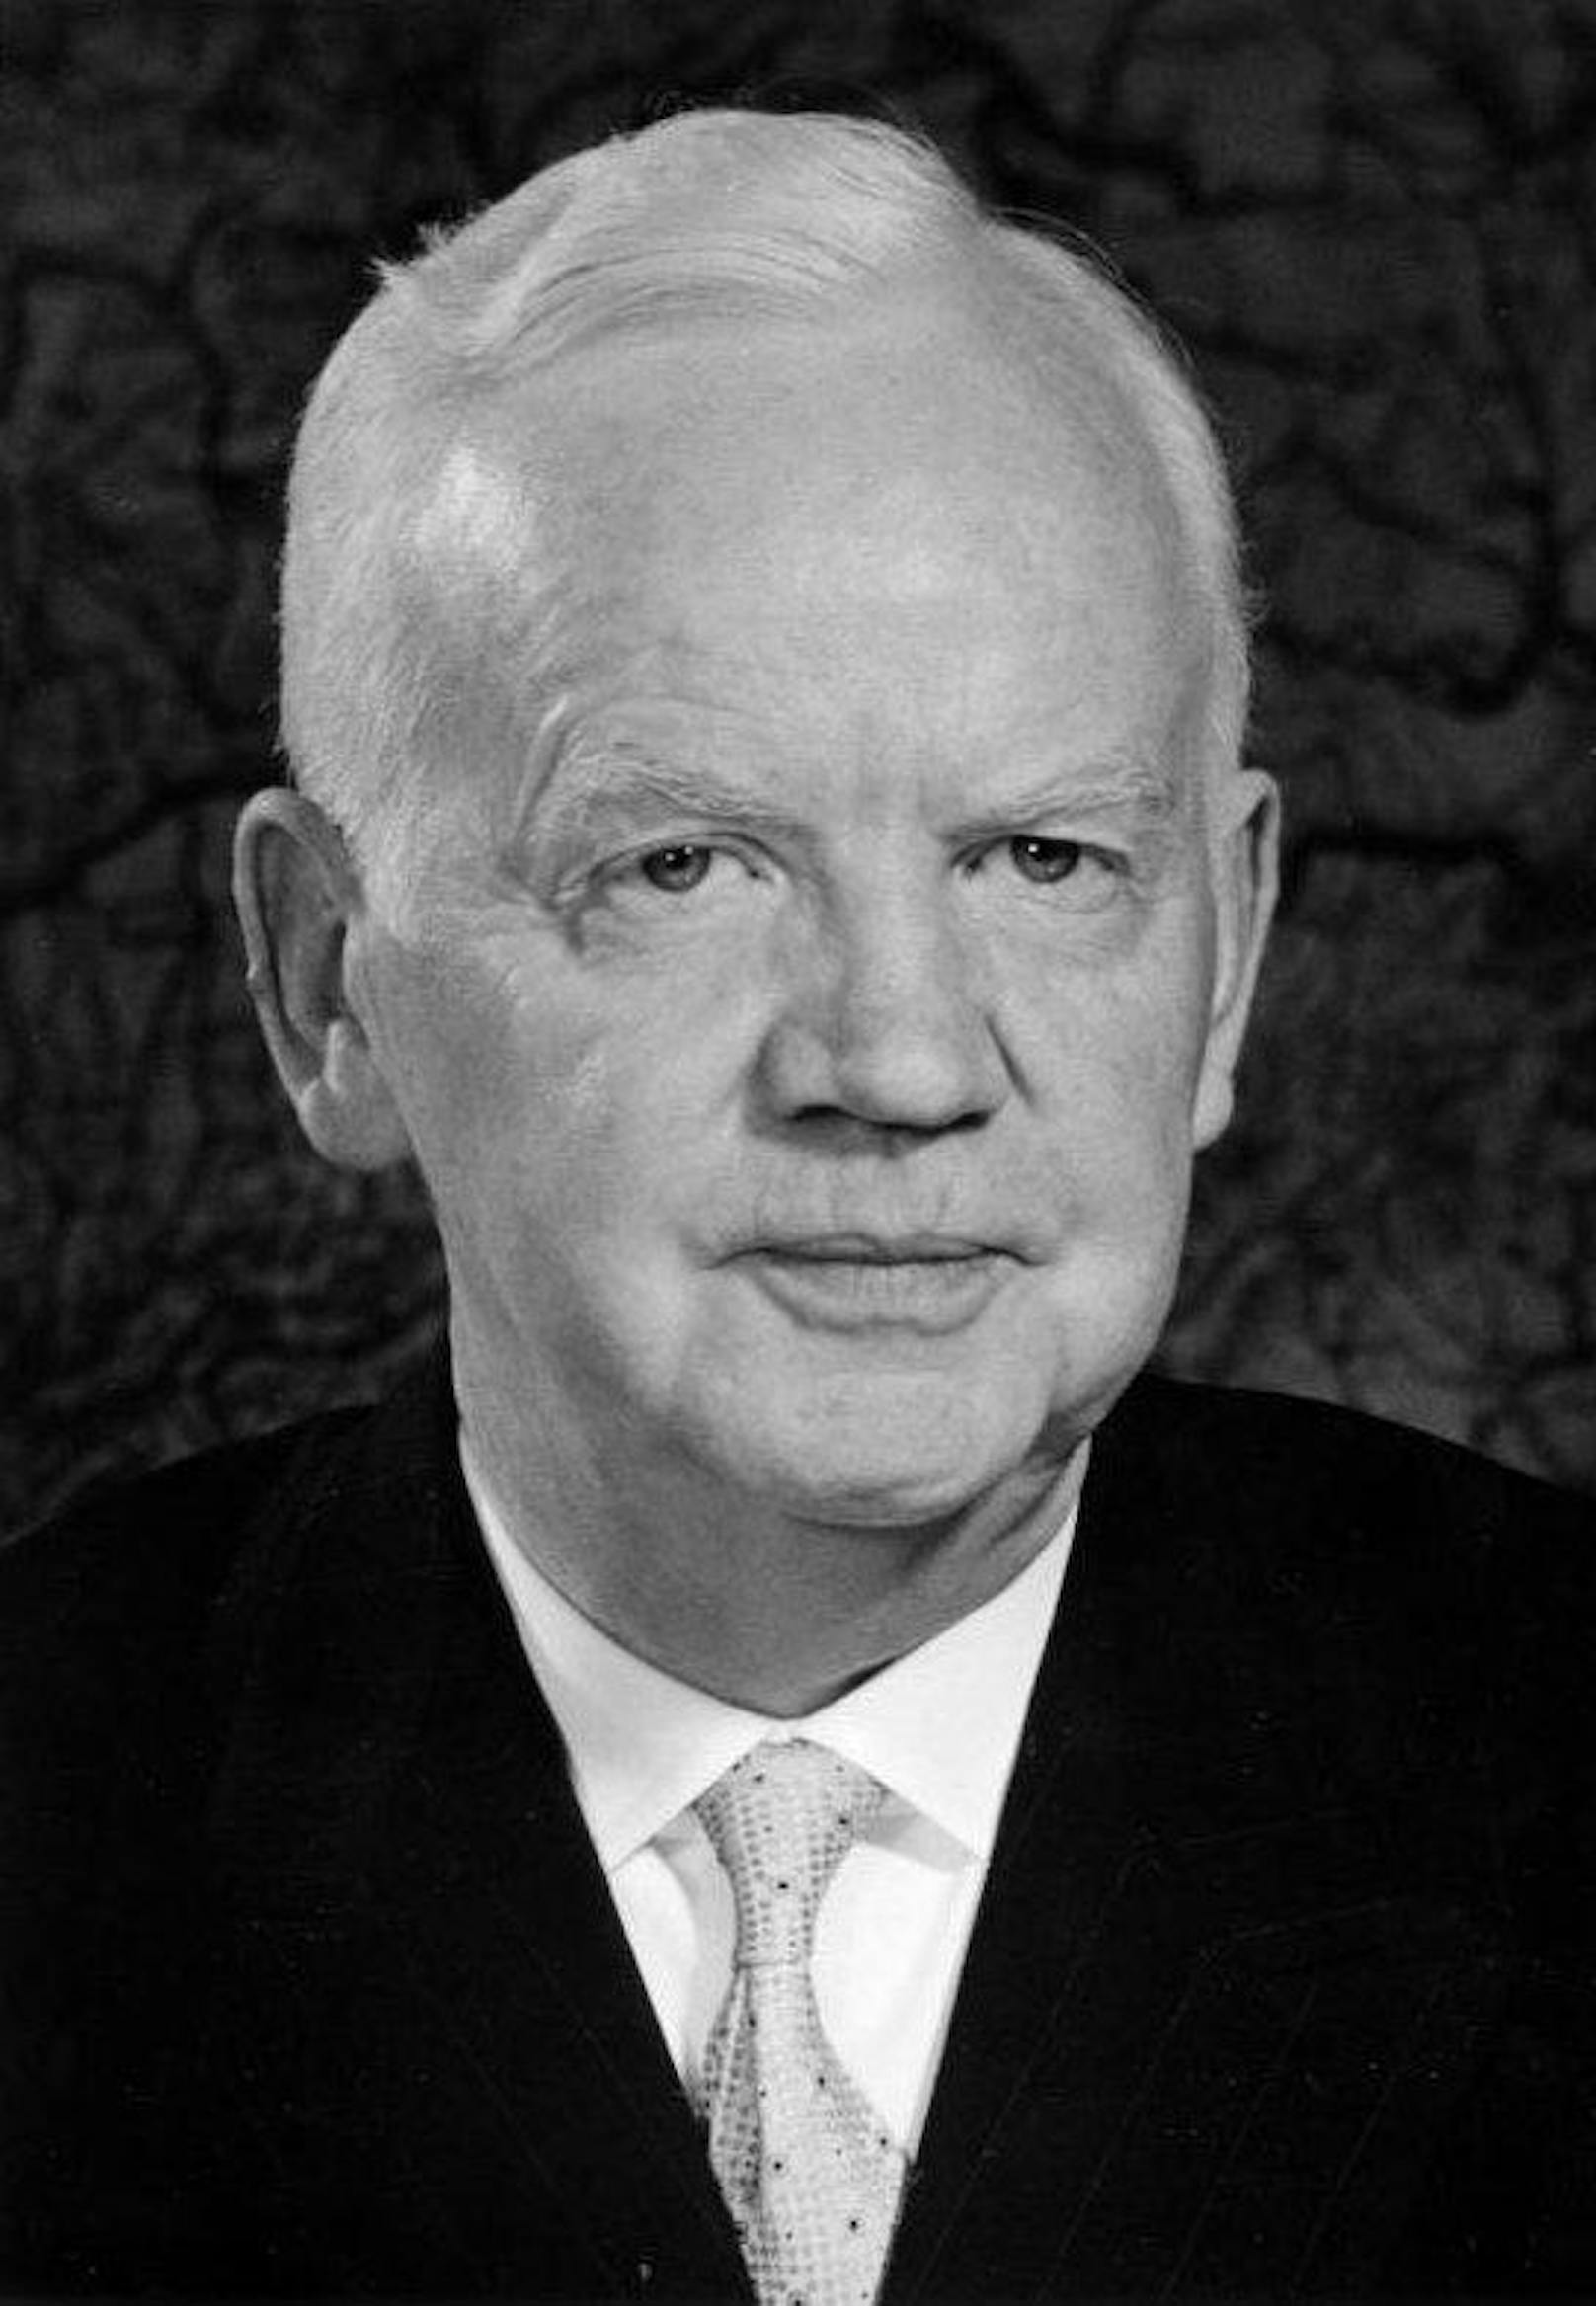 <b>Deutschlands 2. Bundespräsident (von 1959-1969) Heinrich Lübke (1894-1972)</b>

"Meine Damen und Herren, liebe Neger!"